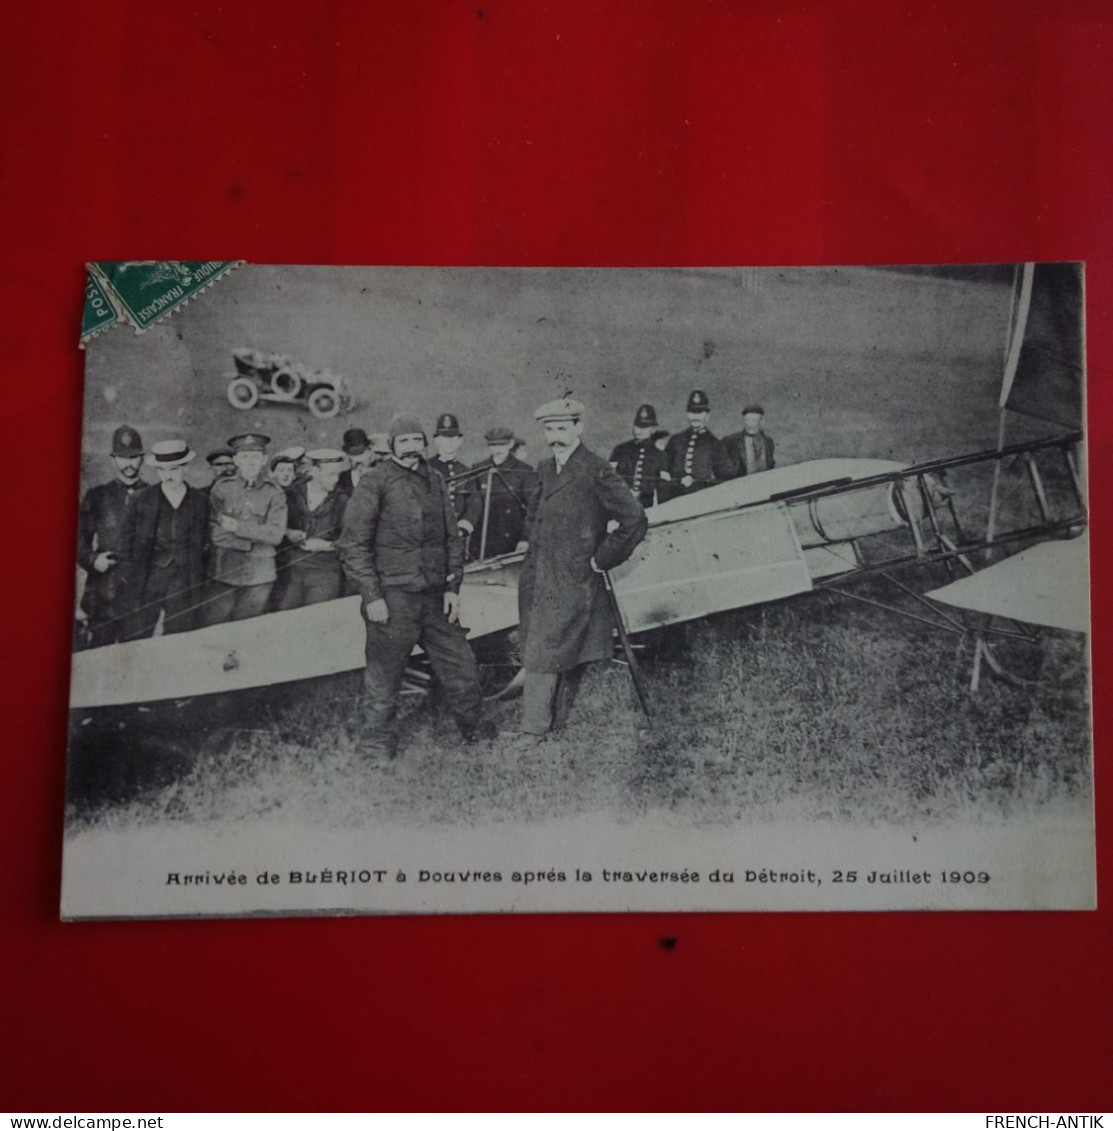 ARRIVEE DE BLERIOT A DOUVRES APRES LA TRAVERSEE DU DETROIT 1909 - Airmen, Fliers